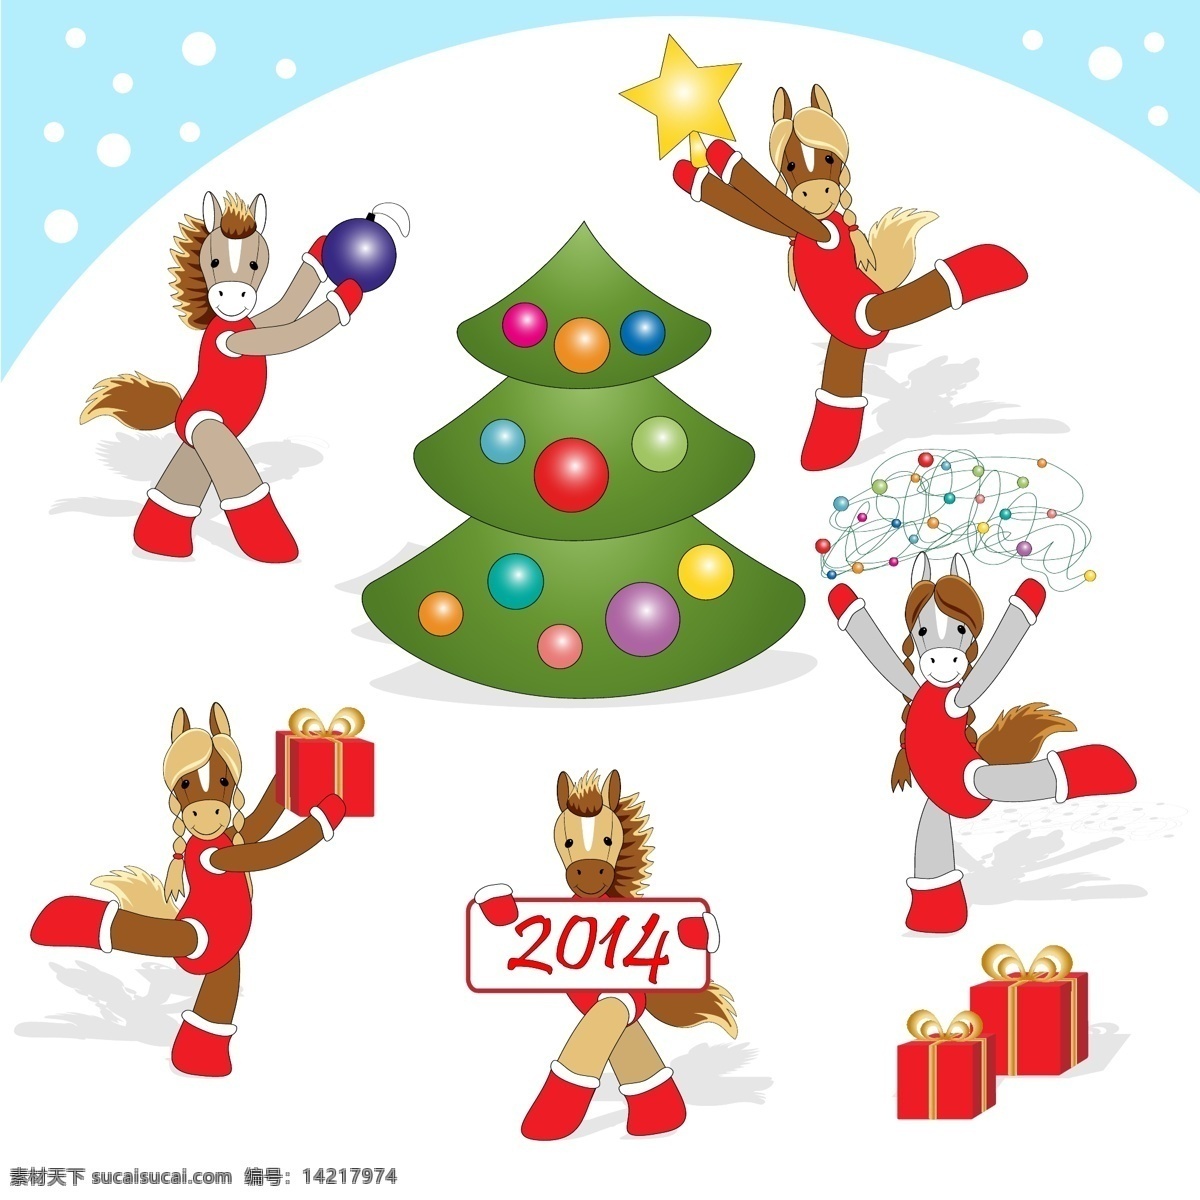 2014 卡通 马 啦啦队 插画 矢量 动物 礼物 圣诞节 圣诞树 矢量图 新年 雪花 其他矢量图